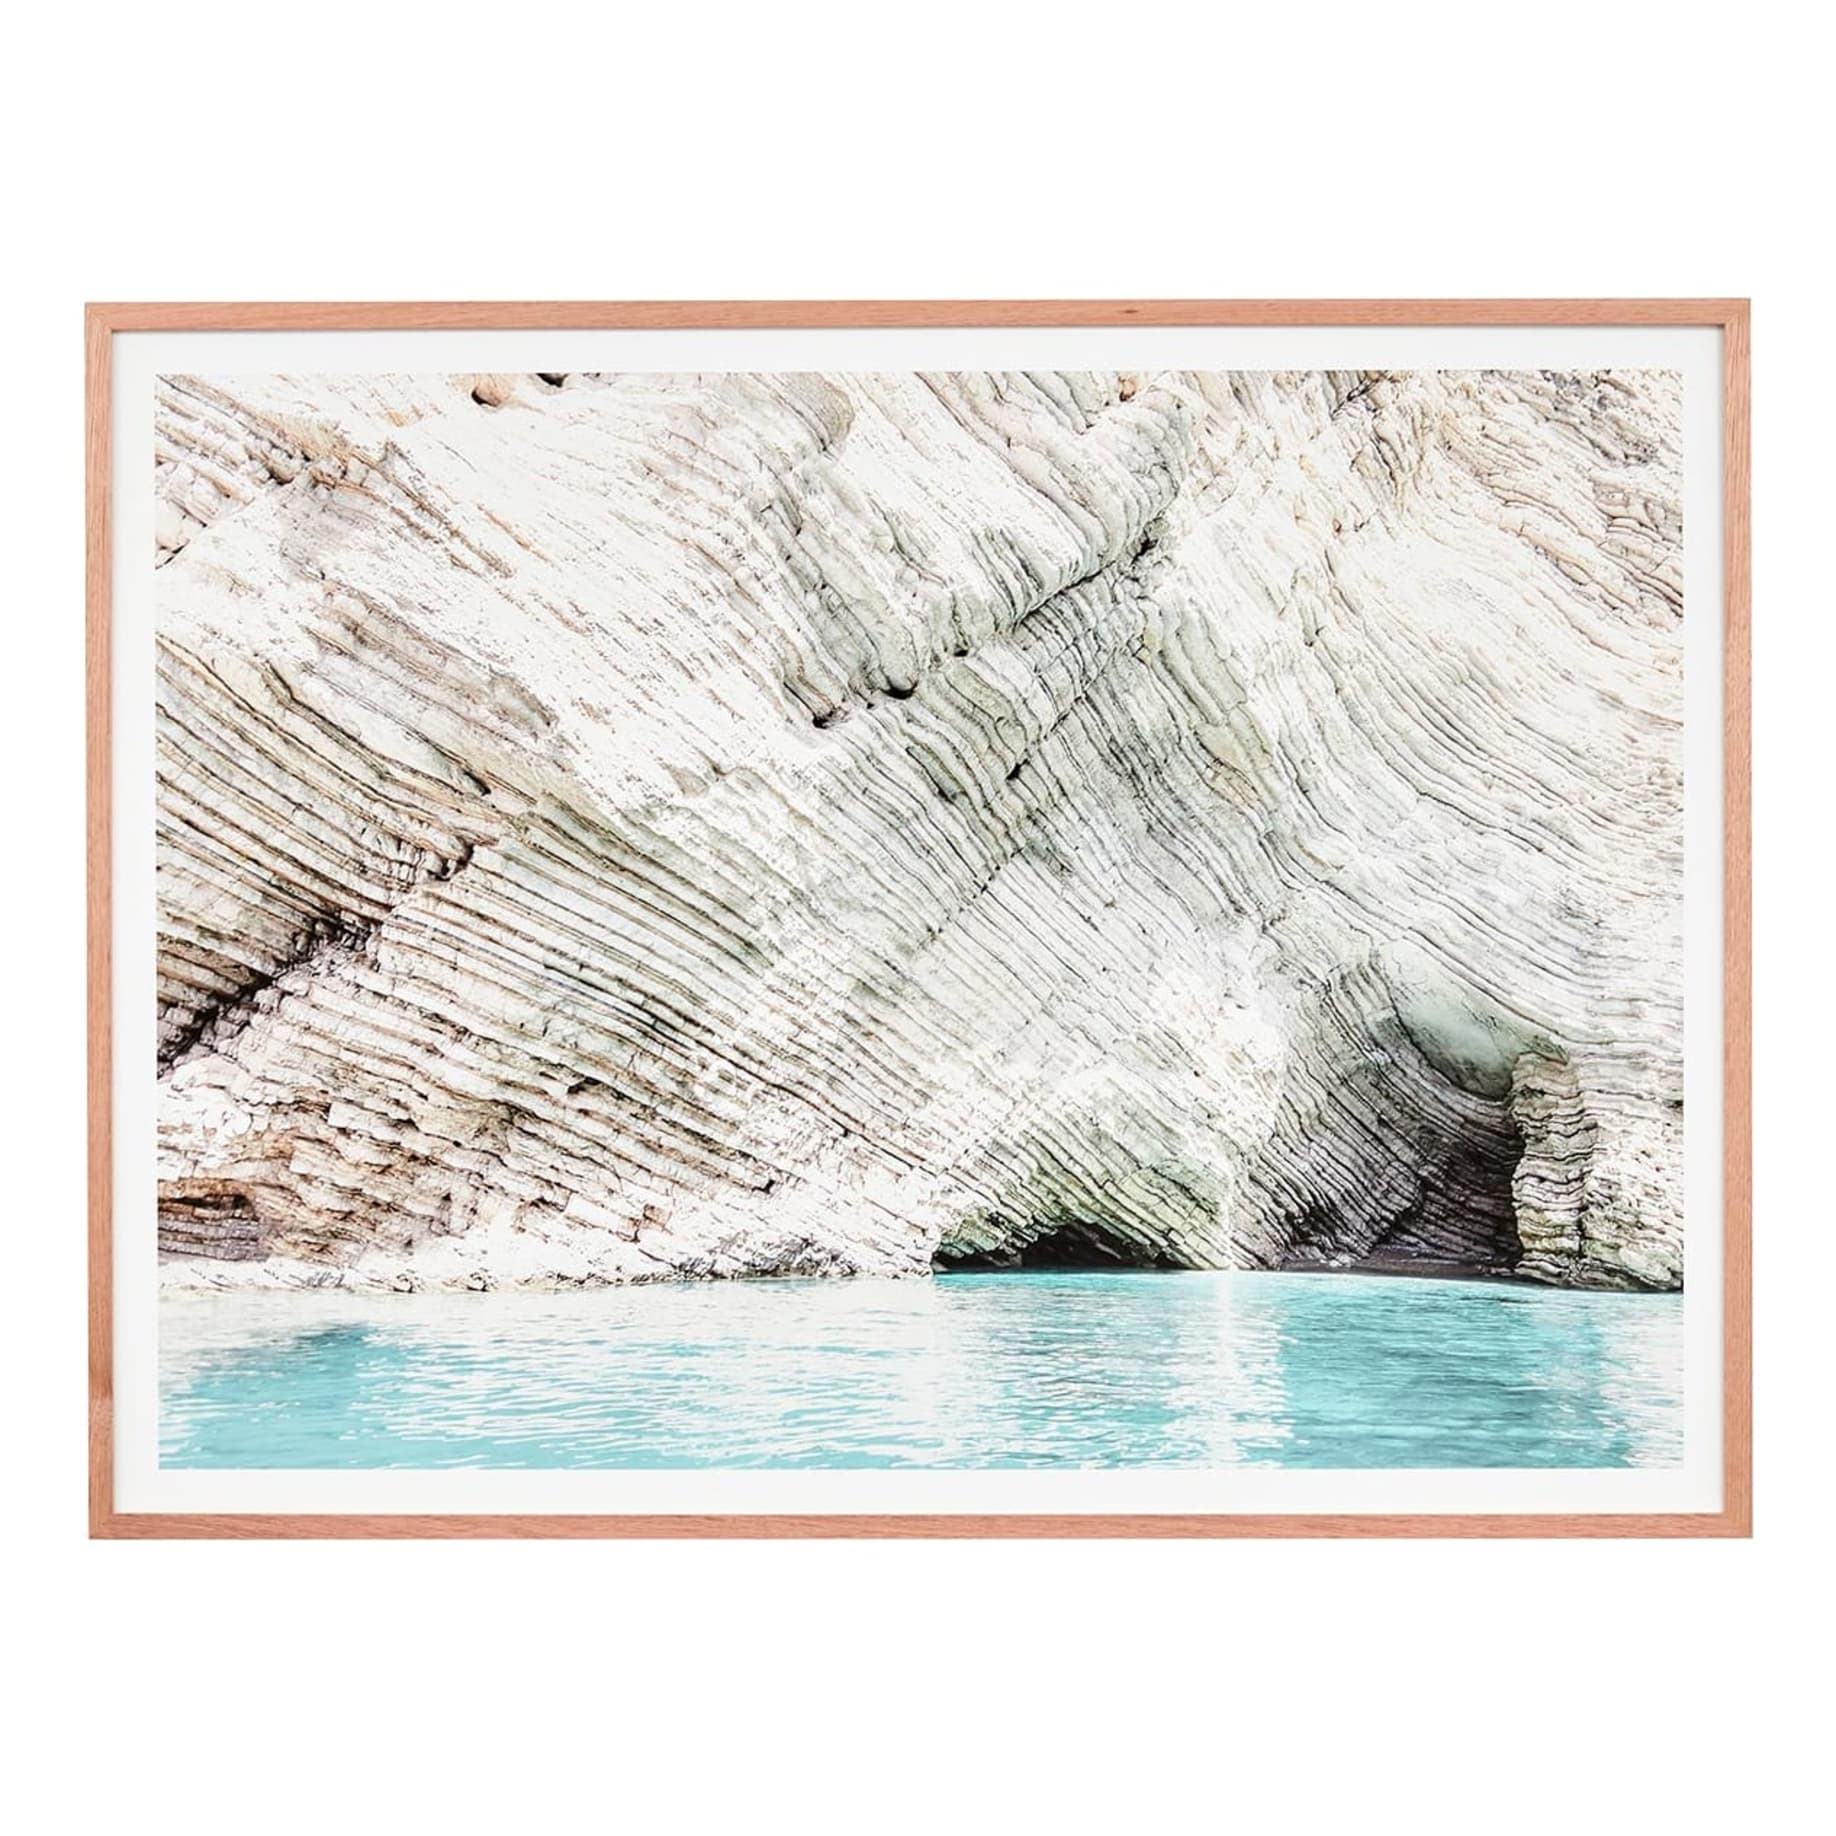 White Cliff Framed Print in 62 x 45cm